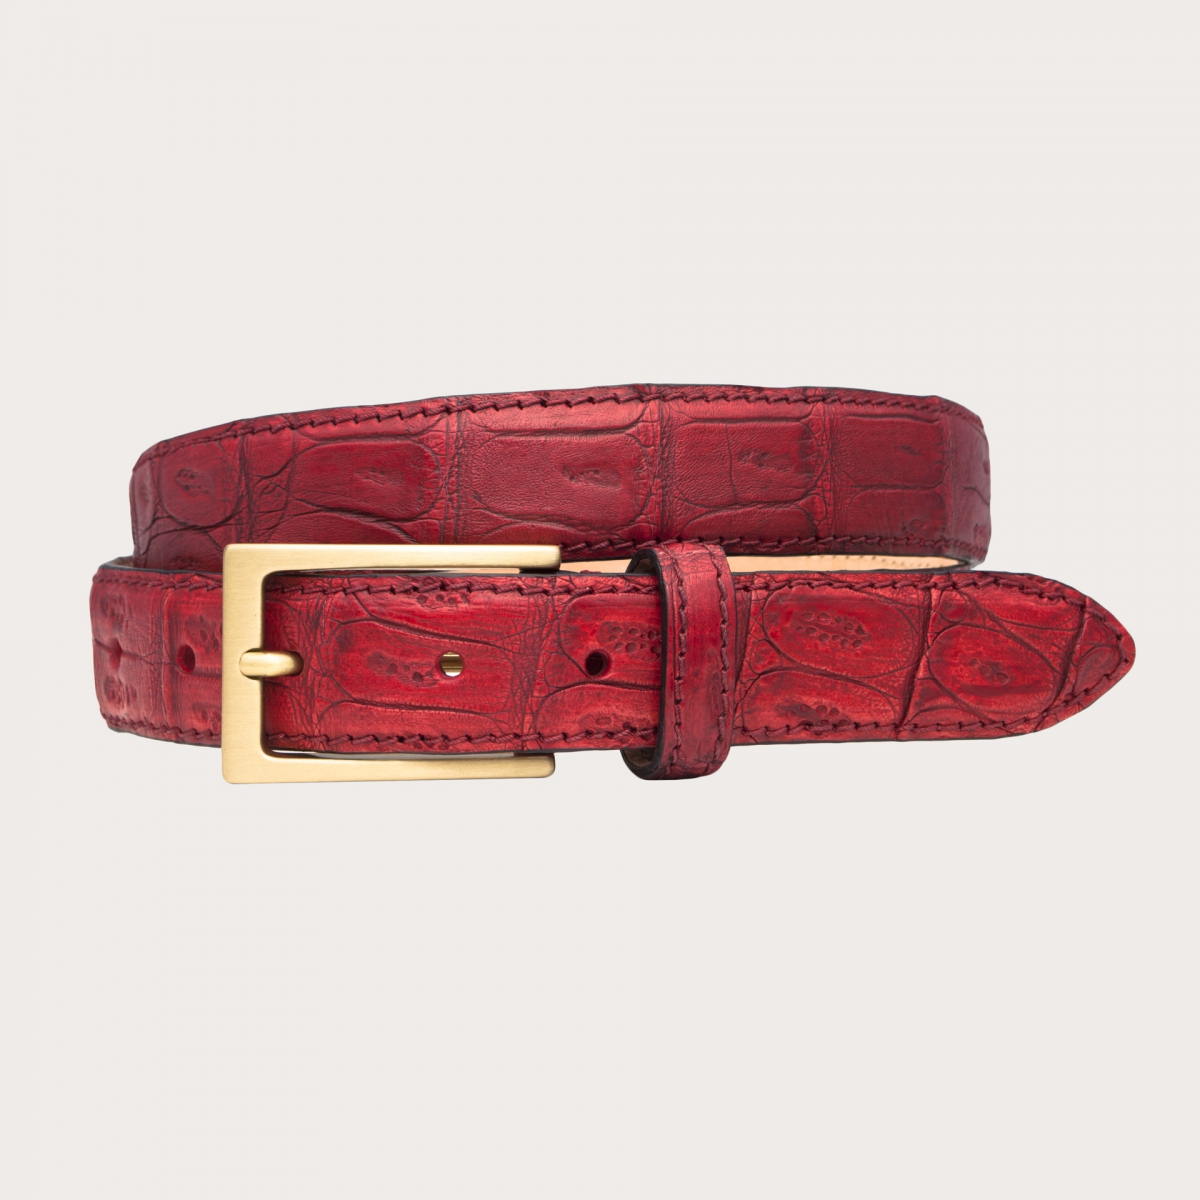 BRUCLE Elegante cinturón en cola de cocodrilo roja coloreada a mano